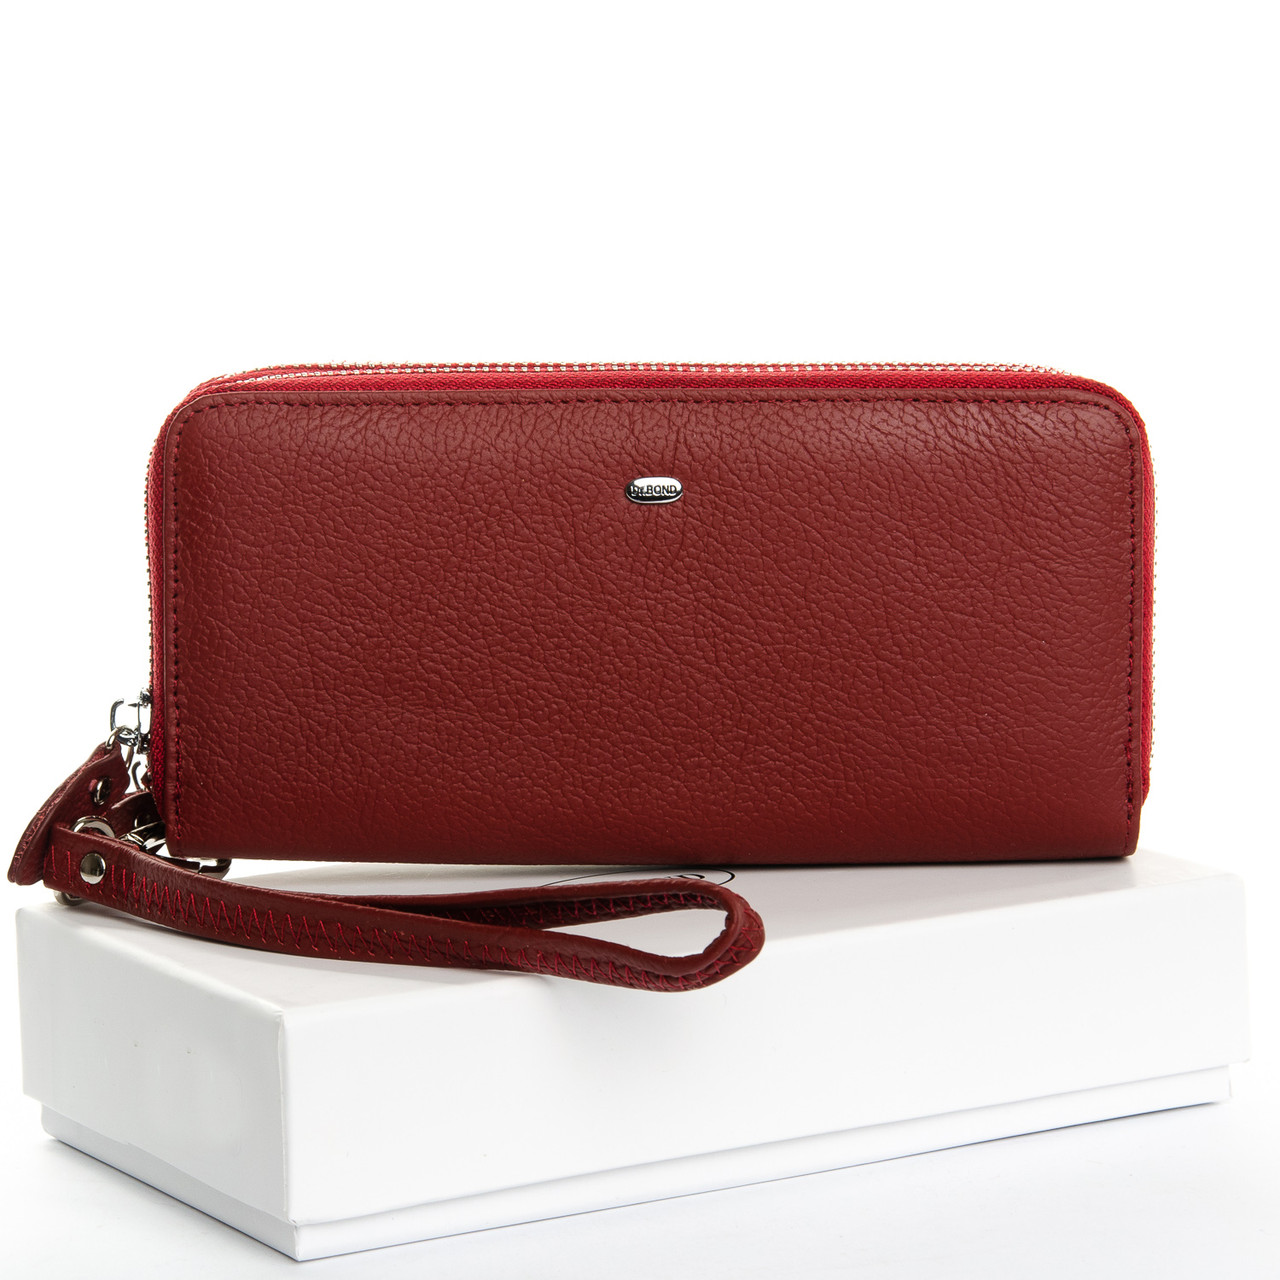 Жіночий місткий гаманець-клатч м'яка шкіра, колір темний червоний 19*9,5*4,5 см DR. BOND (W39-3 bordo)